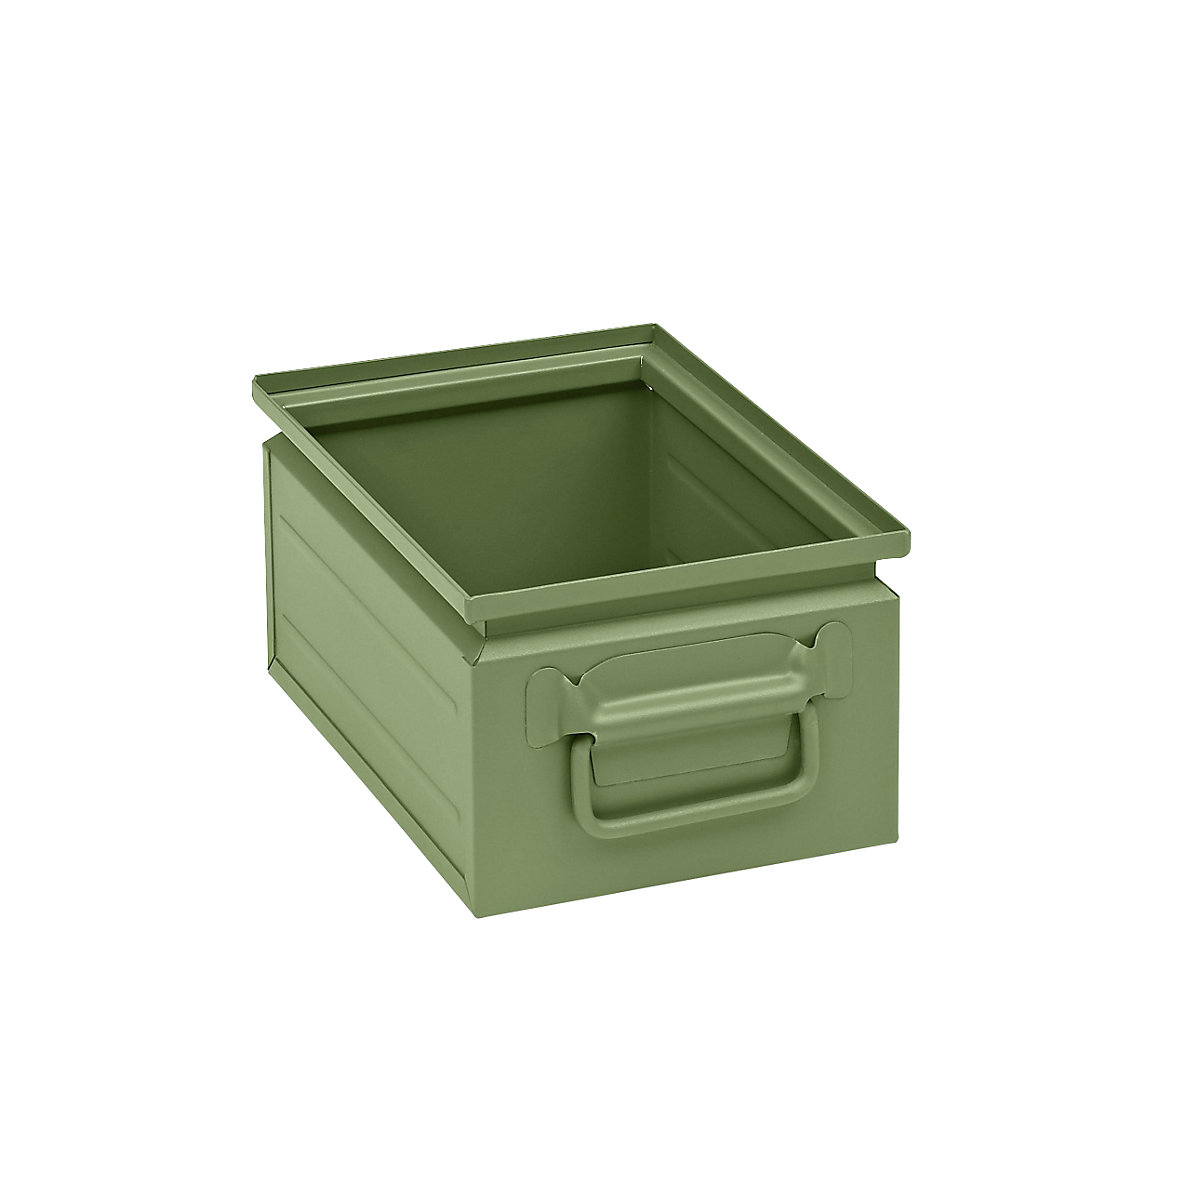 Kutija za slaganje od čeličnog lima, volumen otprilike 9 l, u rezeda zelenoj boji RAL 6011